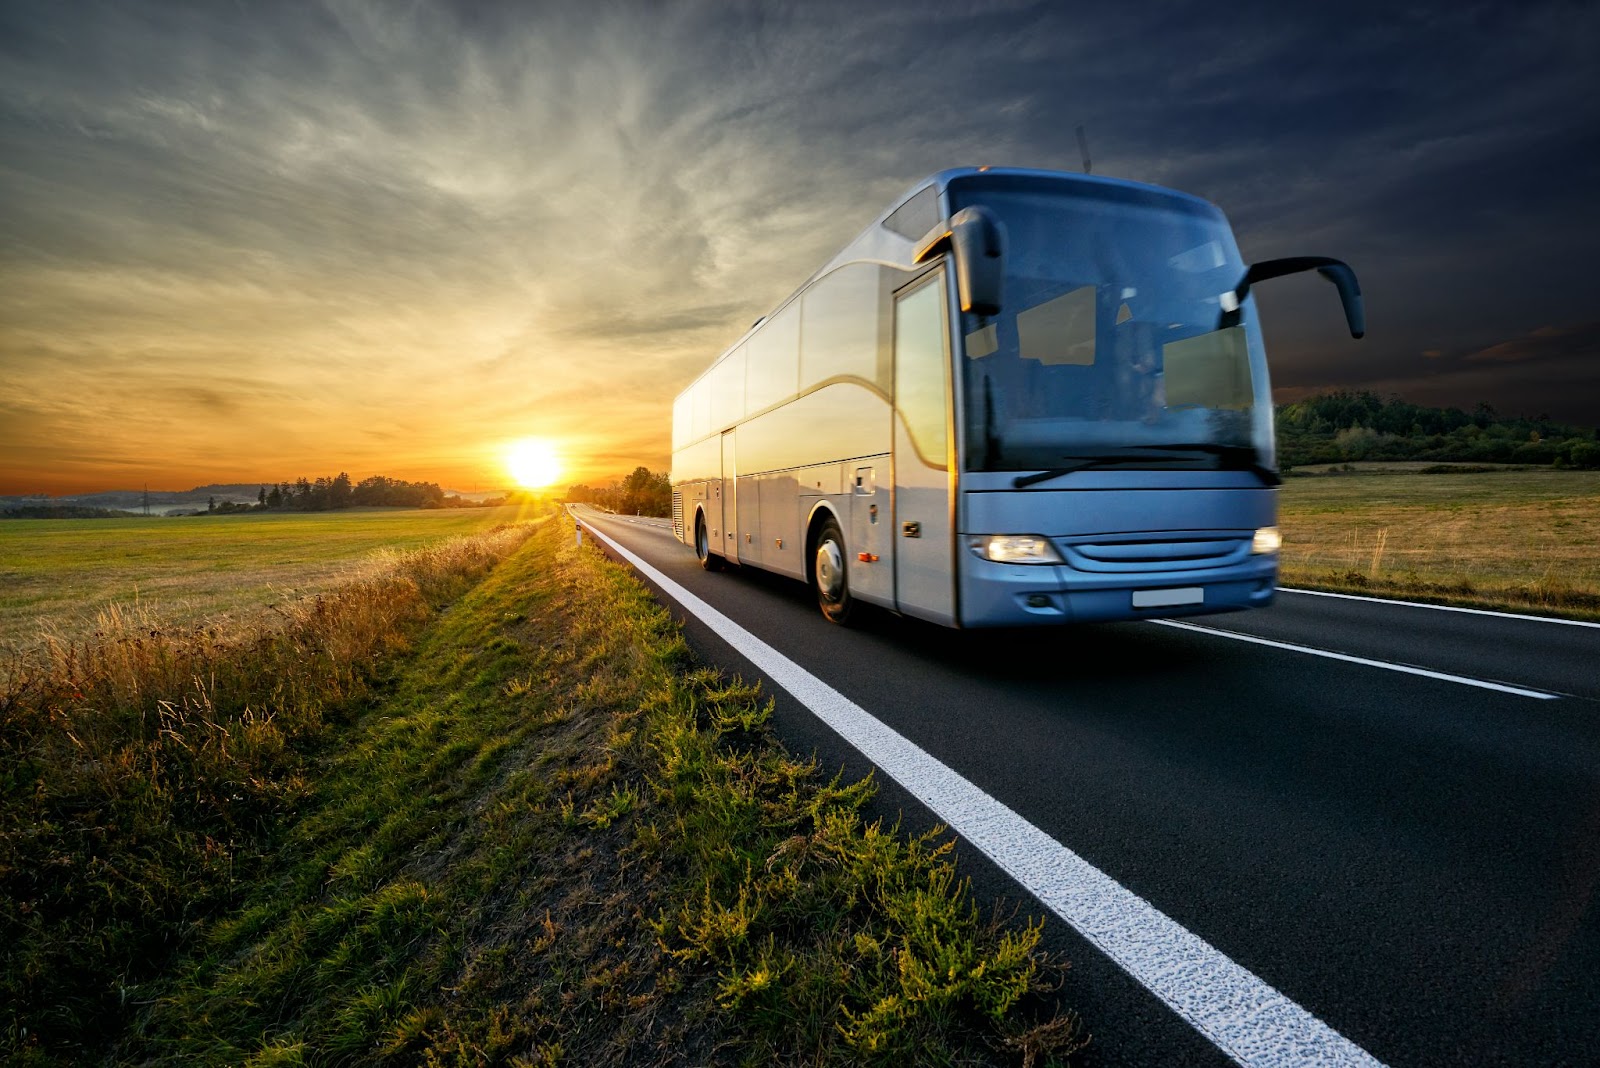 Ônibus de viagem em estrada vazia. Ao fundo, no horizonte atrás do ônibus, o sol está se pondo e iluminando toda a imagem com um tom amarelado.